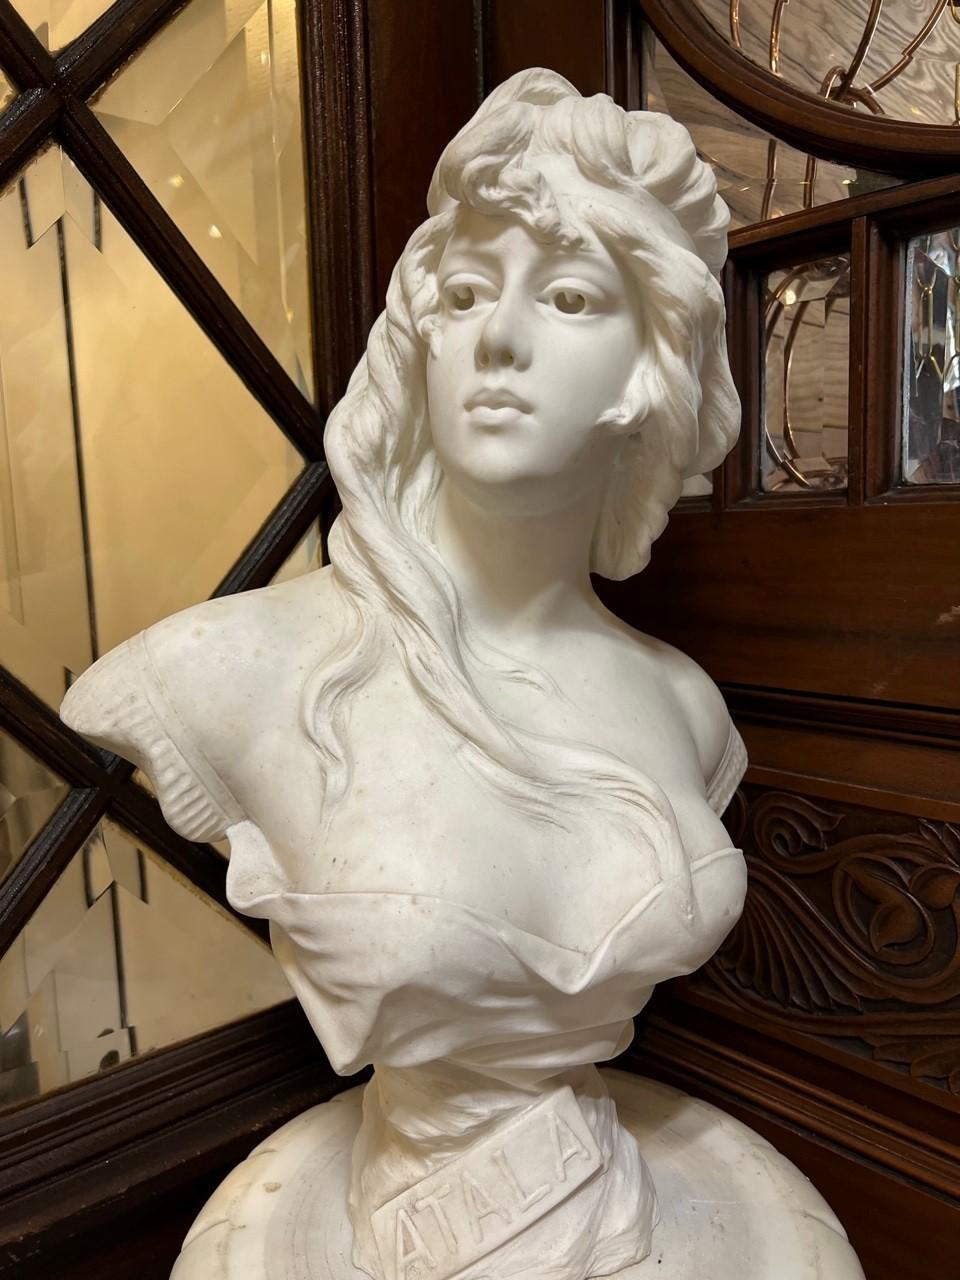 Magnifique buste en marbre d'une jeune femme Atala, sculpté à la main dans du marbre blanc de Carrare dans les années 1890, signé A. Piazza, Carrare. Carrara est une ville d'Italie célèbre dans le monde entier pour ses carrières de marbre blanc et